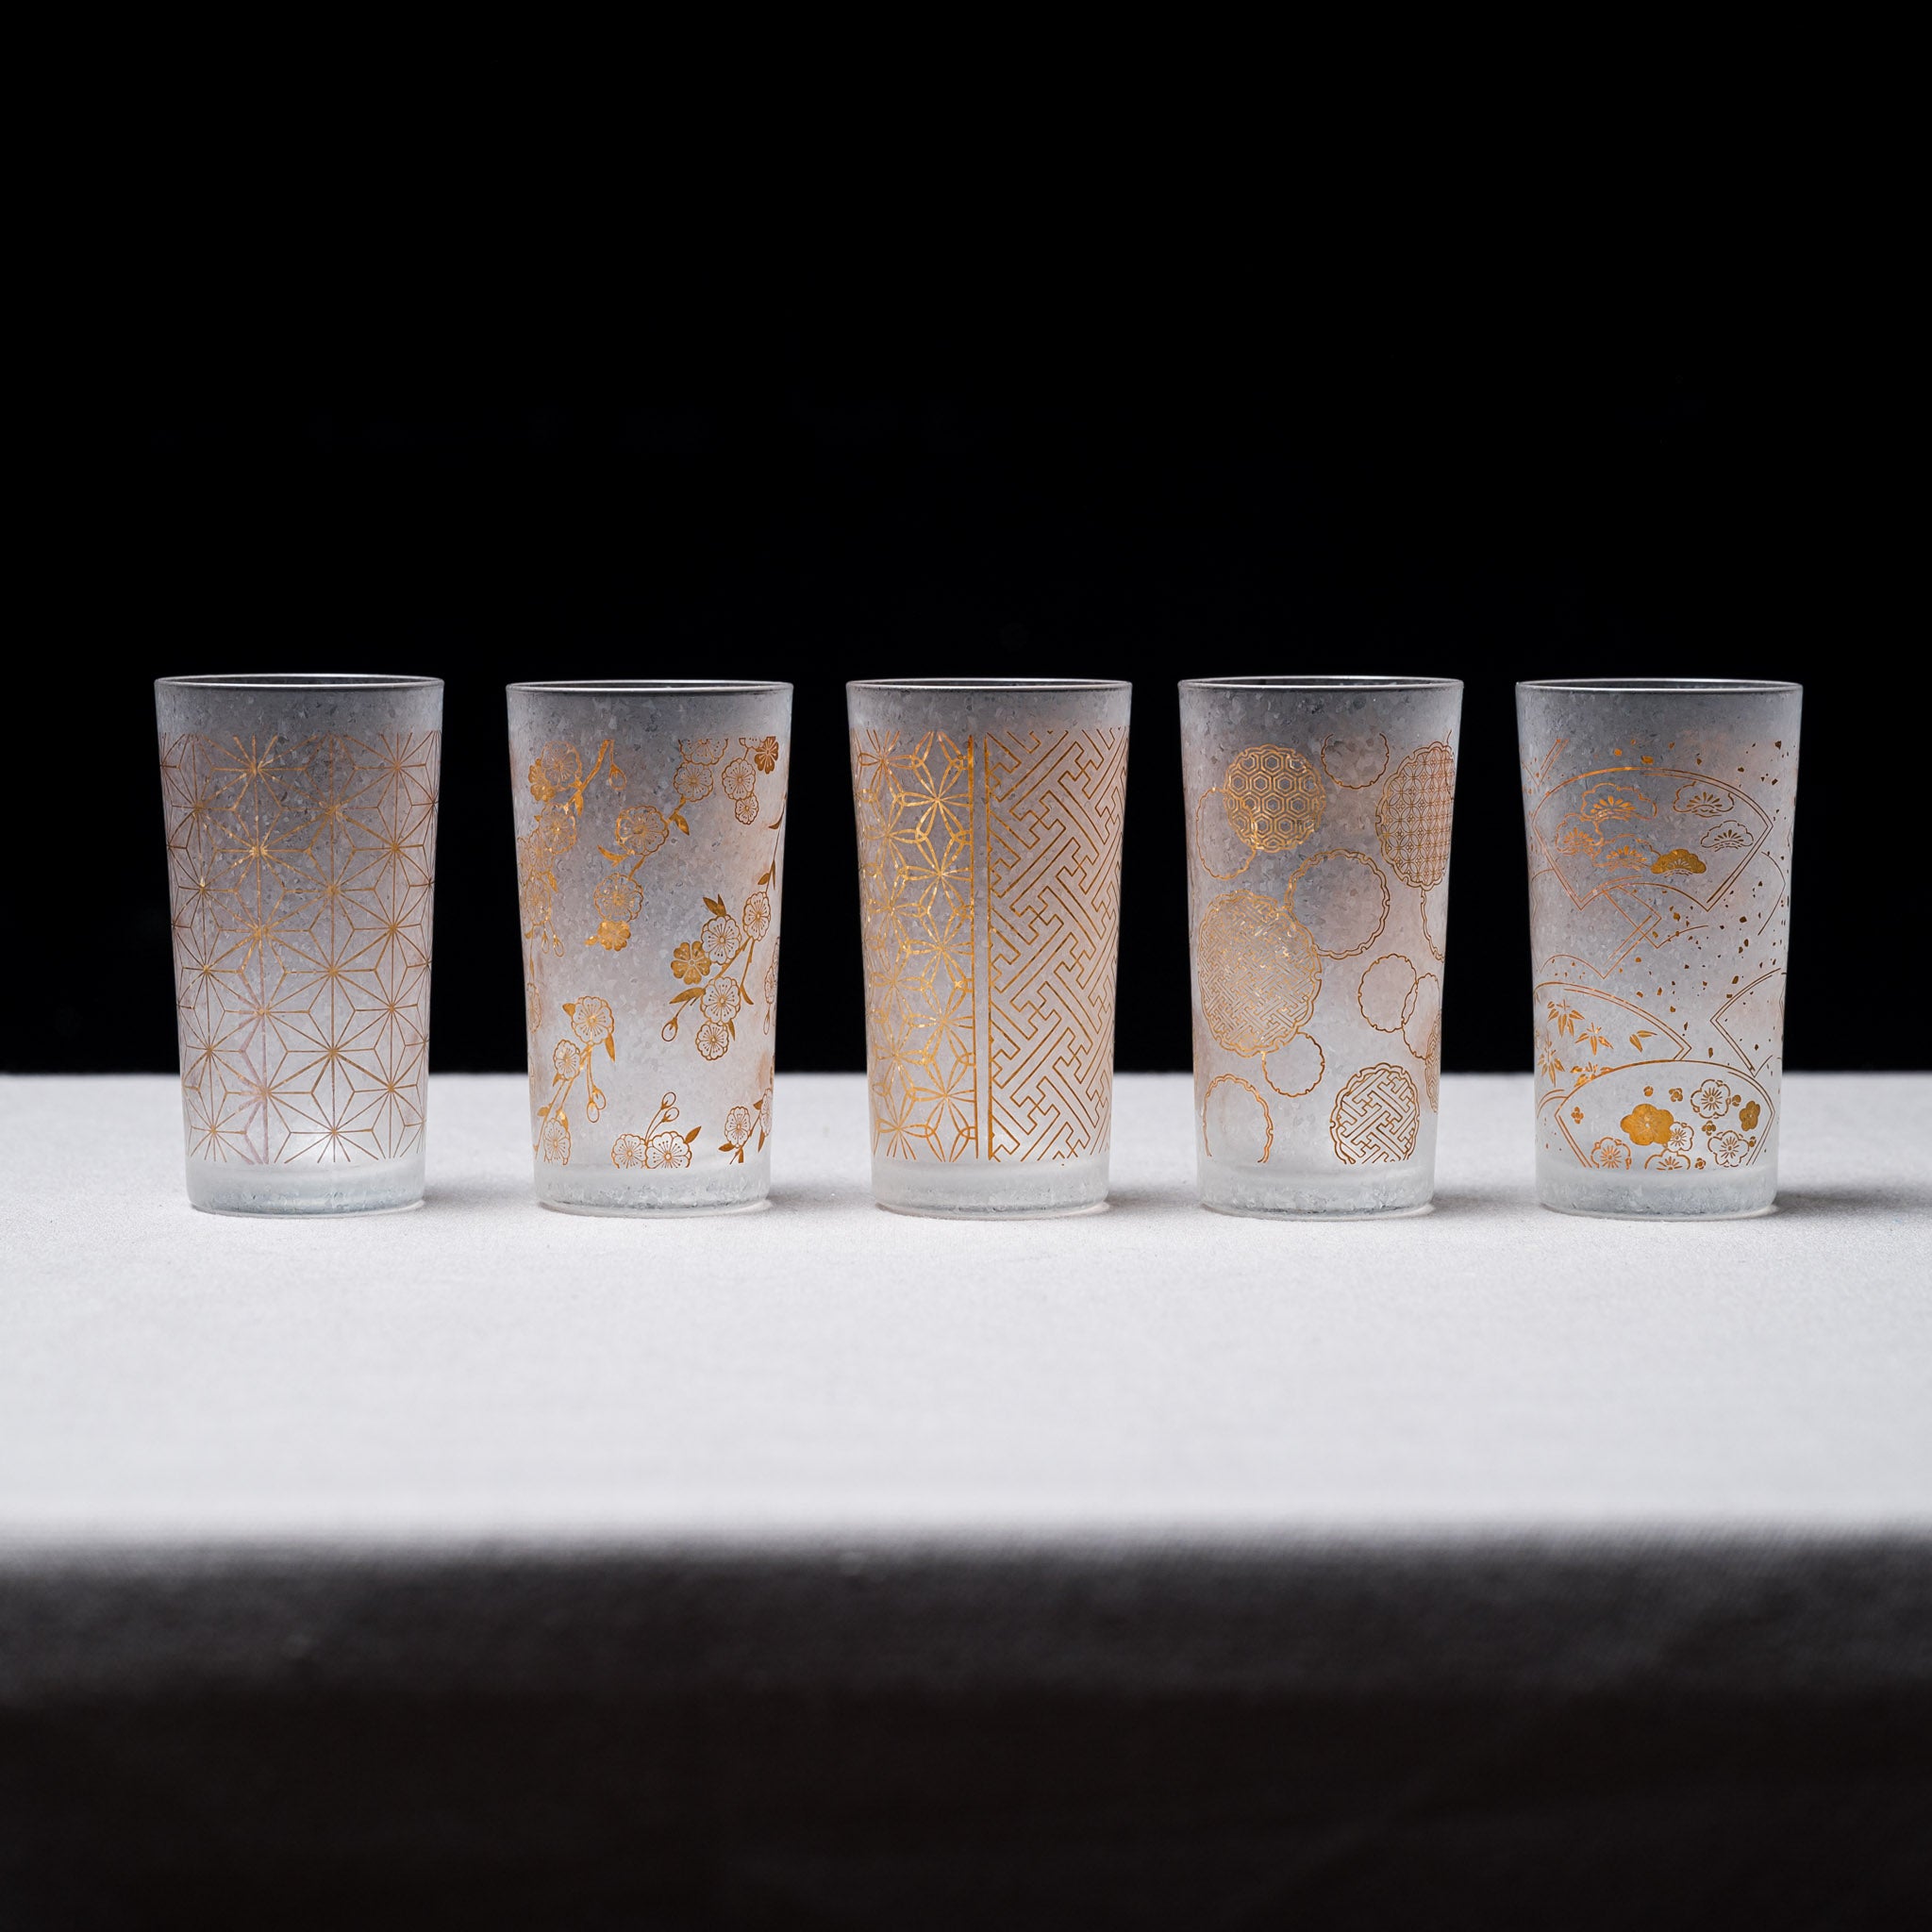 Premium Wakomon Shot Sake Glass - Kisshotsunagi / 和小紋グラス  吉祥繋ぎ